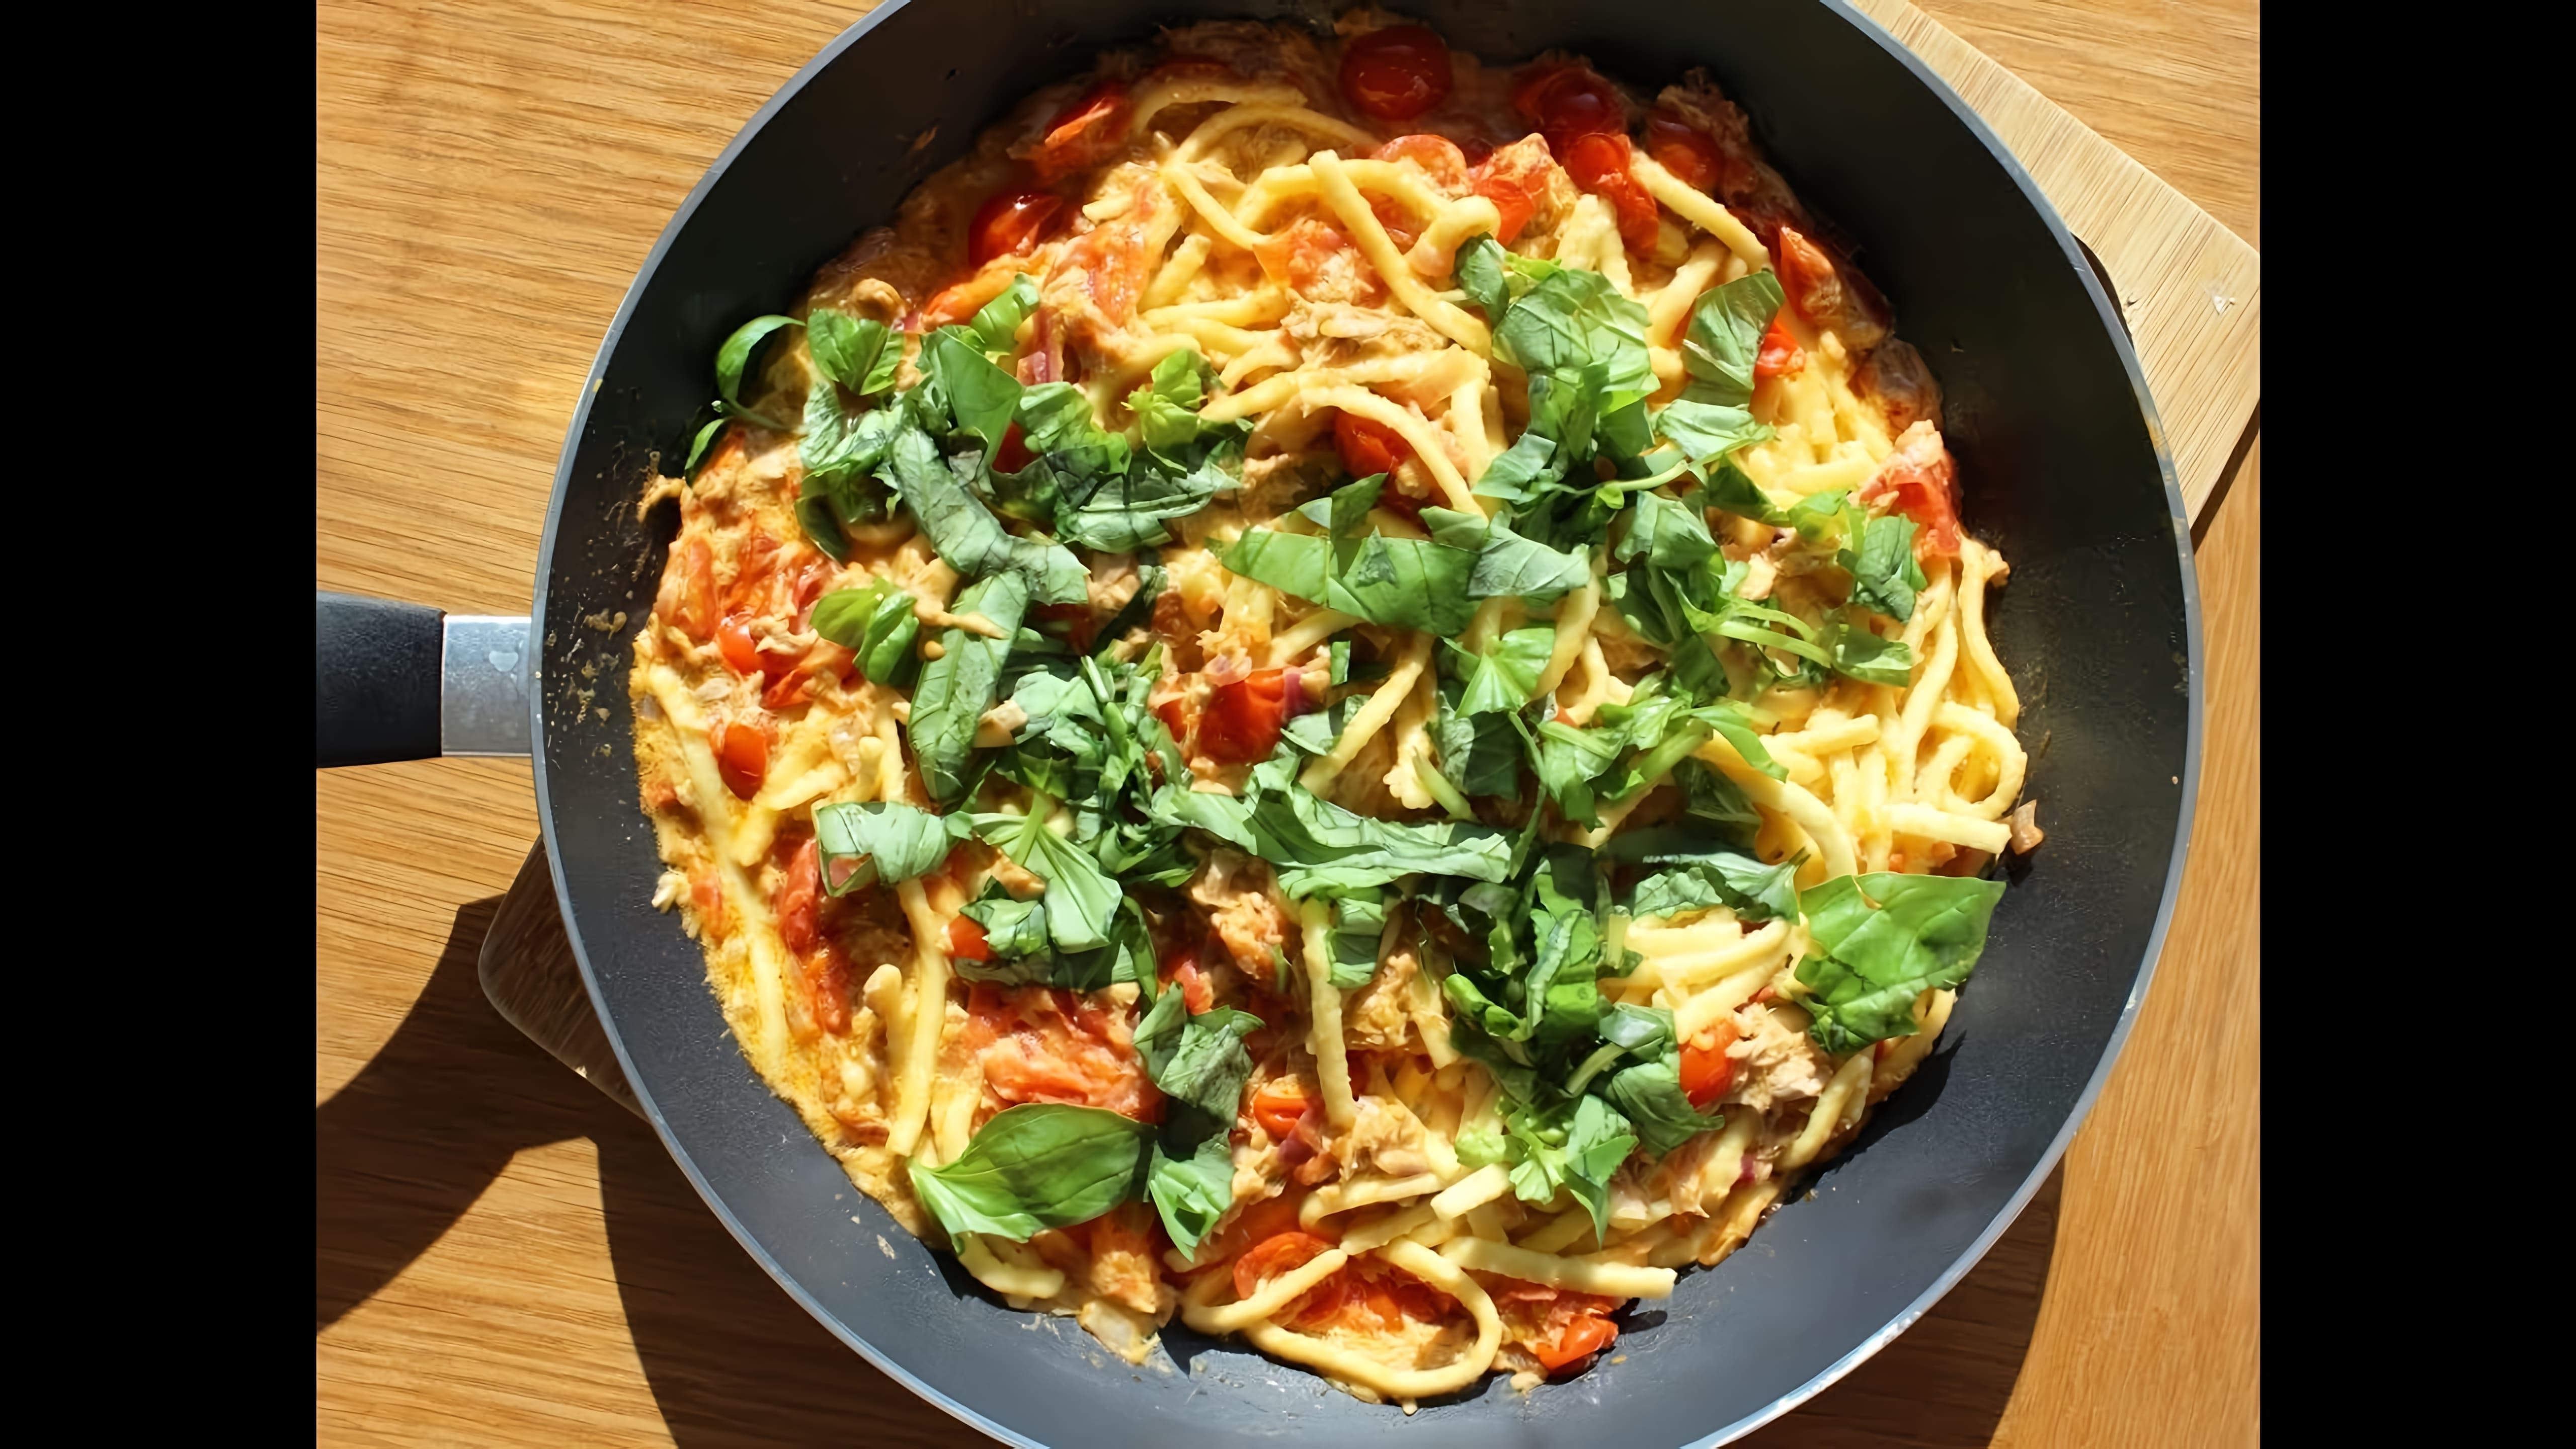 В этом видео демонстрируется рецепт приготовления макарон с тунцом по-итальянски